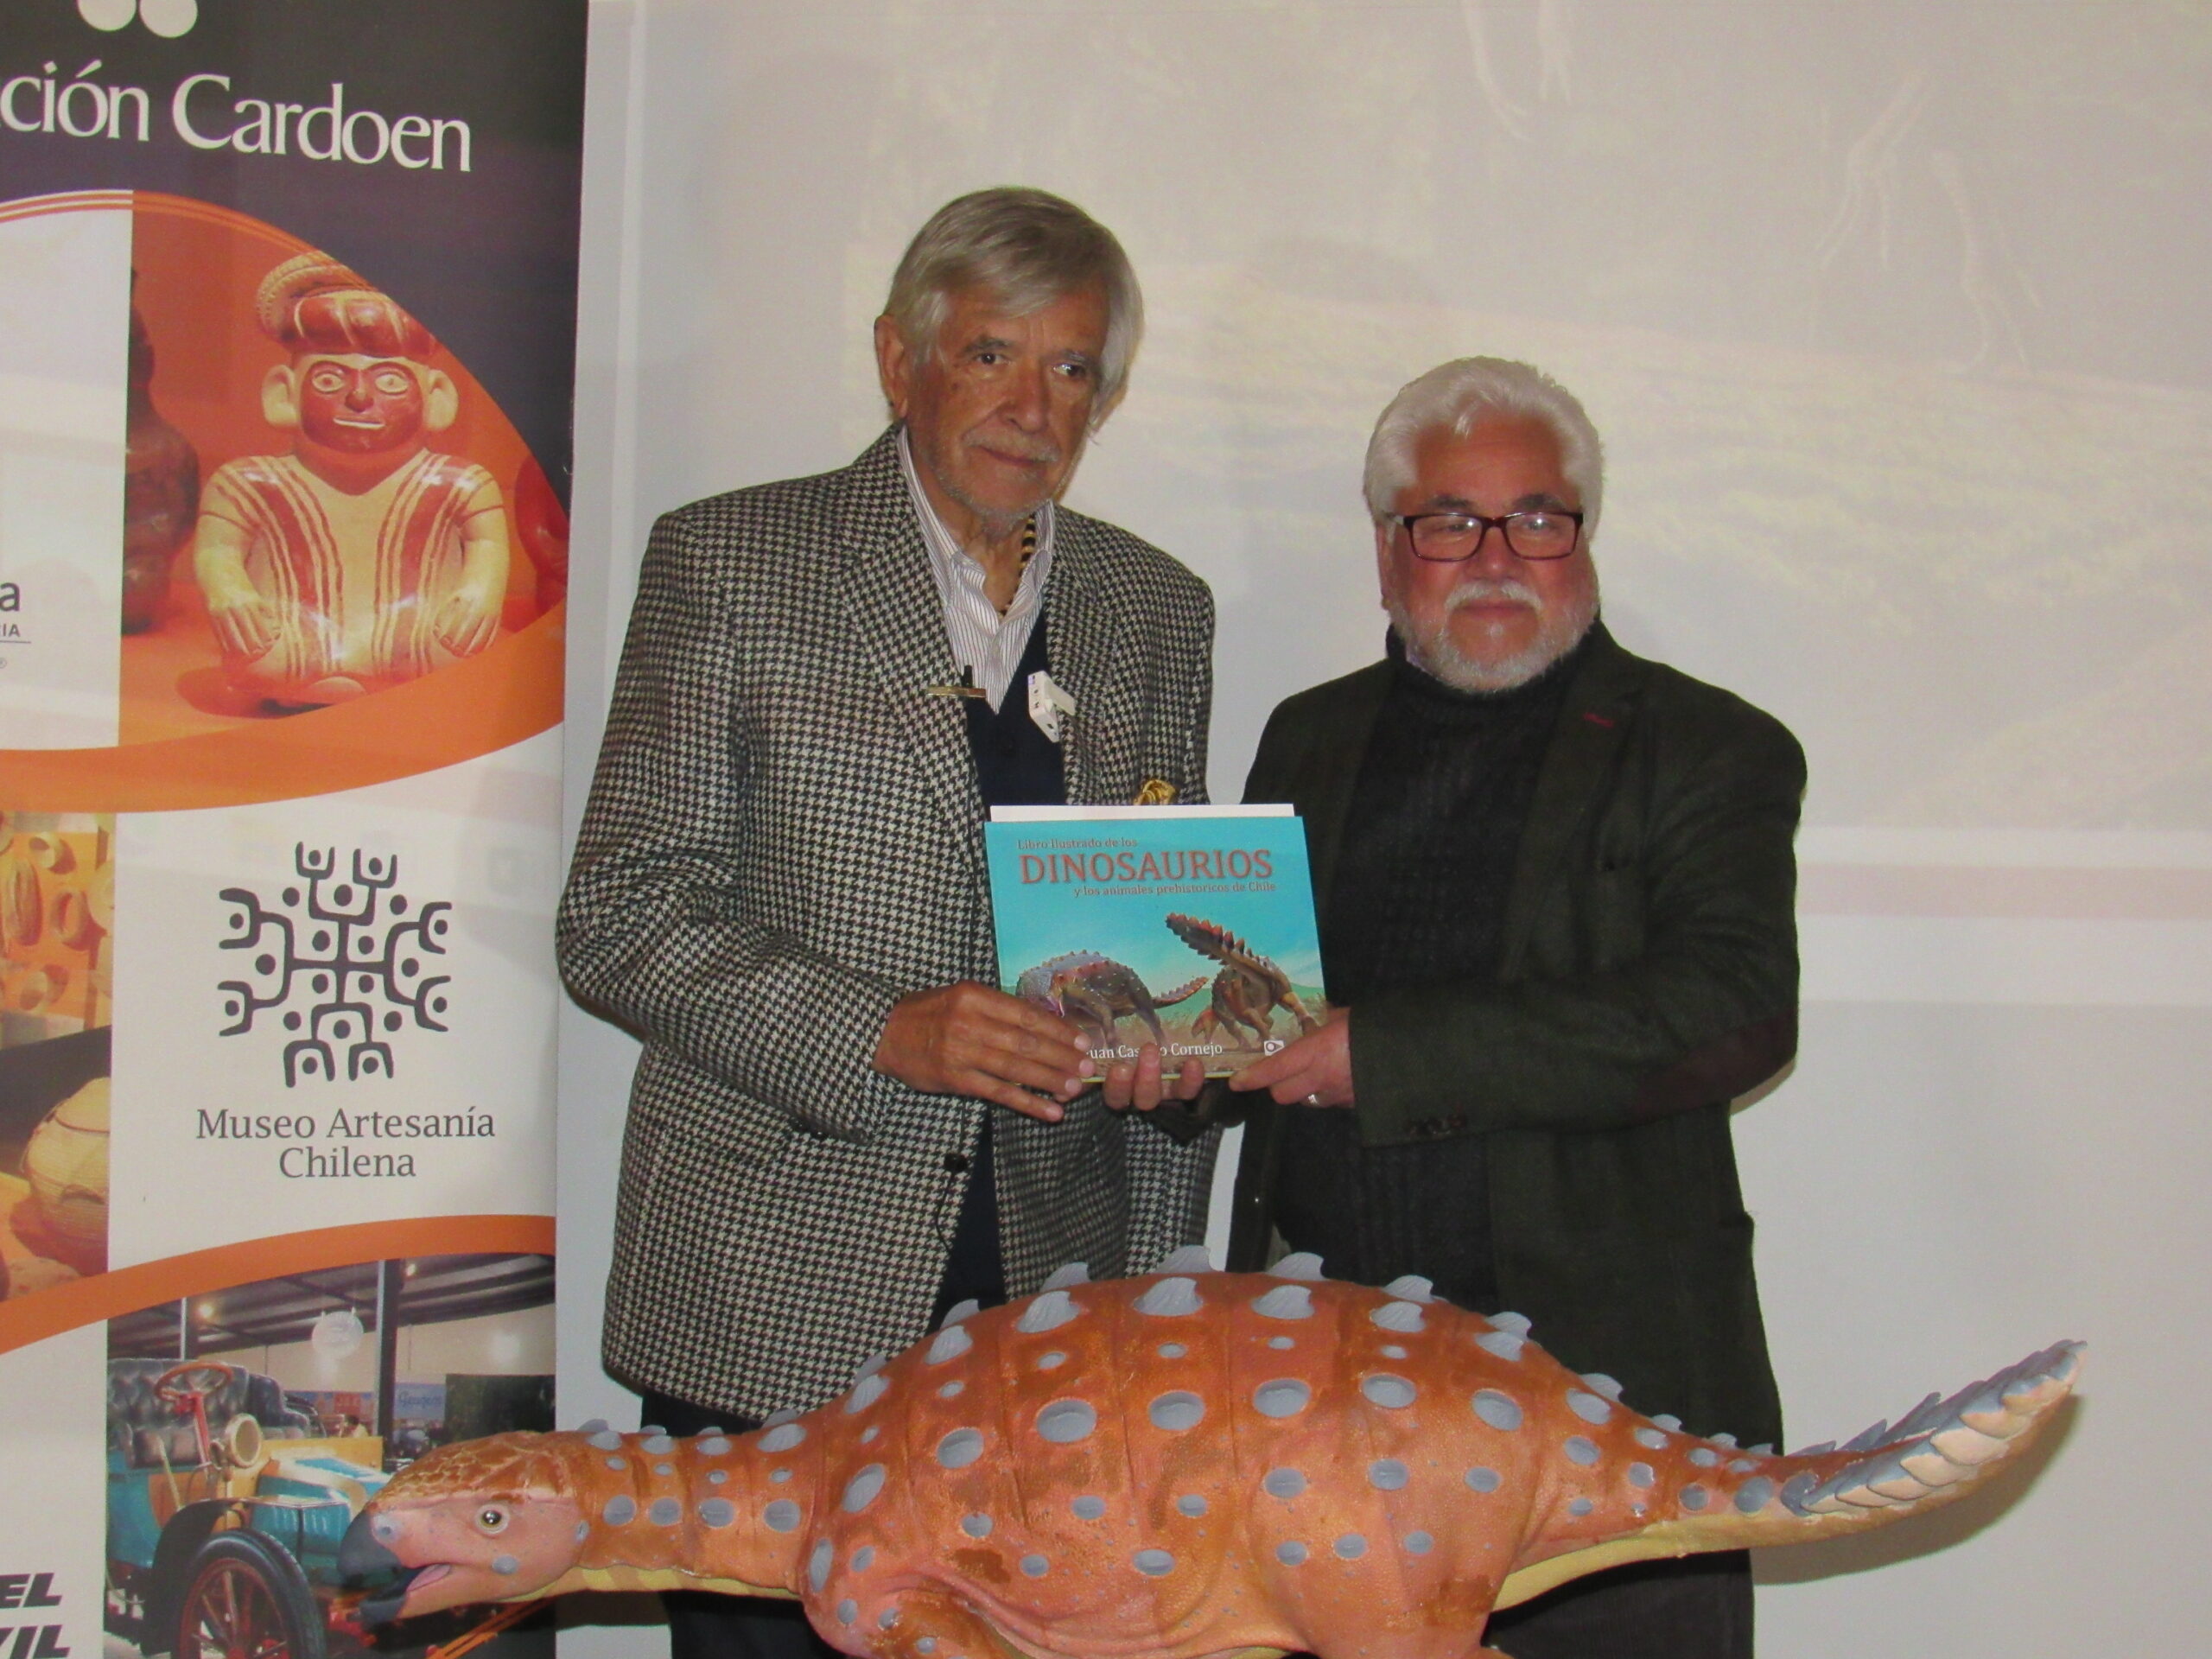 La Fundación Cardoen presenta el primer libro ilustrado de los Dinosaurios  en Chile. – Fundación Cardoen